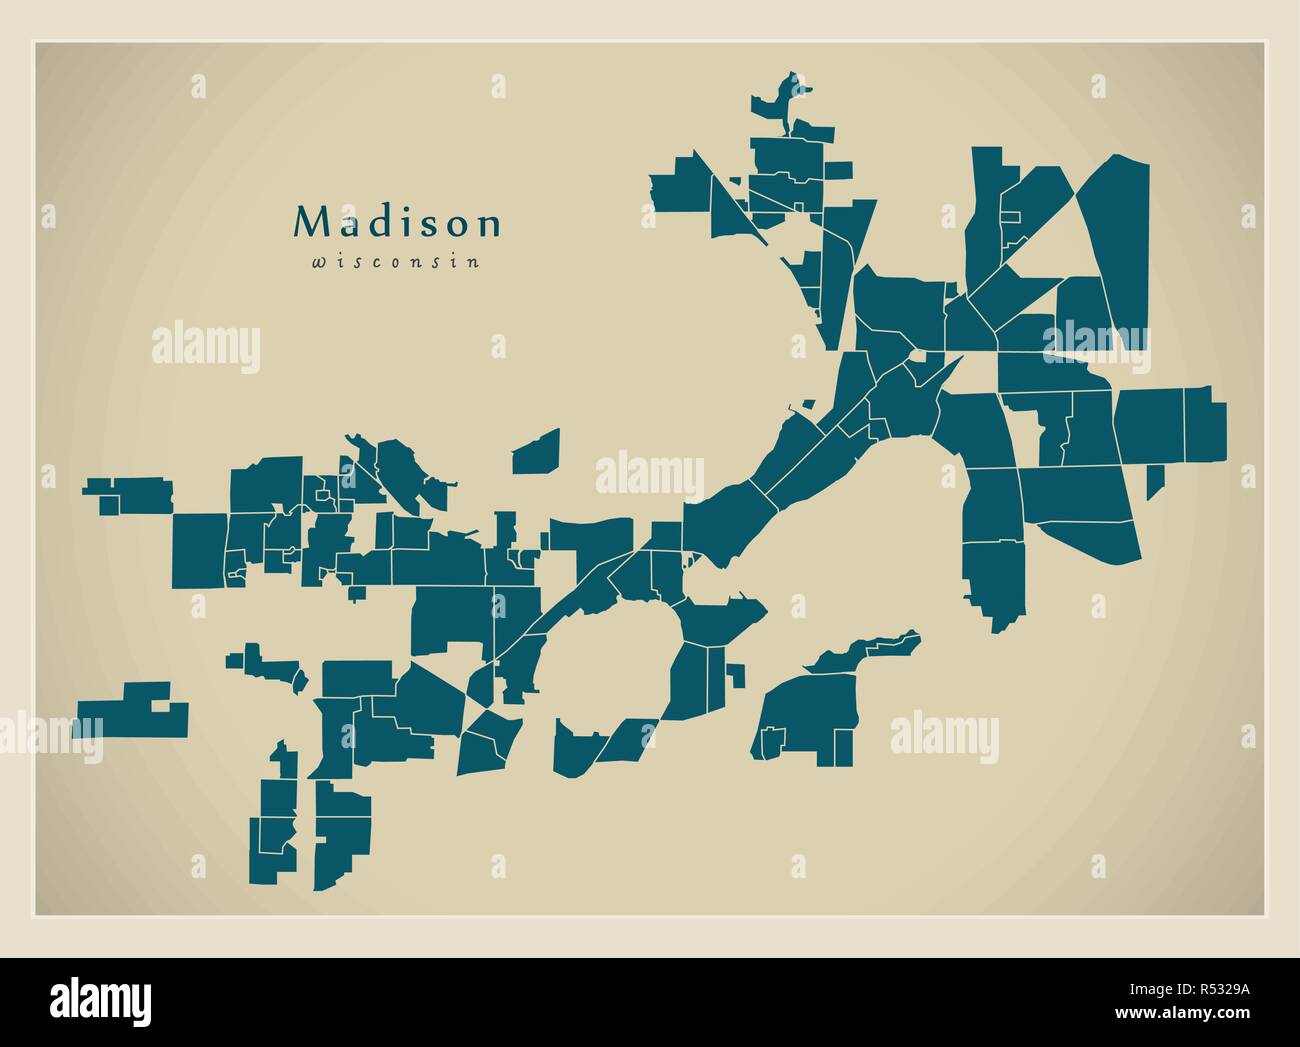 Plan de la ville moderne - ville de Madison, dans le Wisconsin aux USA par les quartiers Illustration de Vecteur